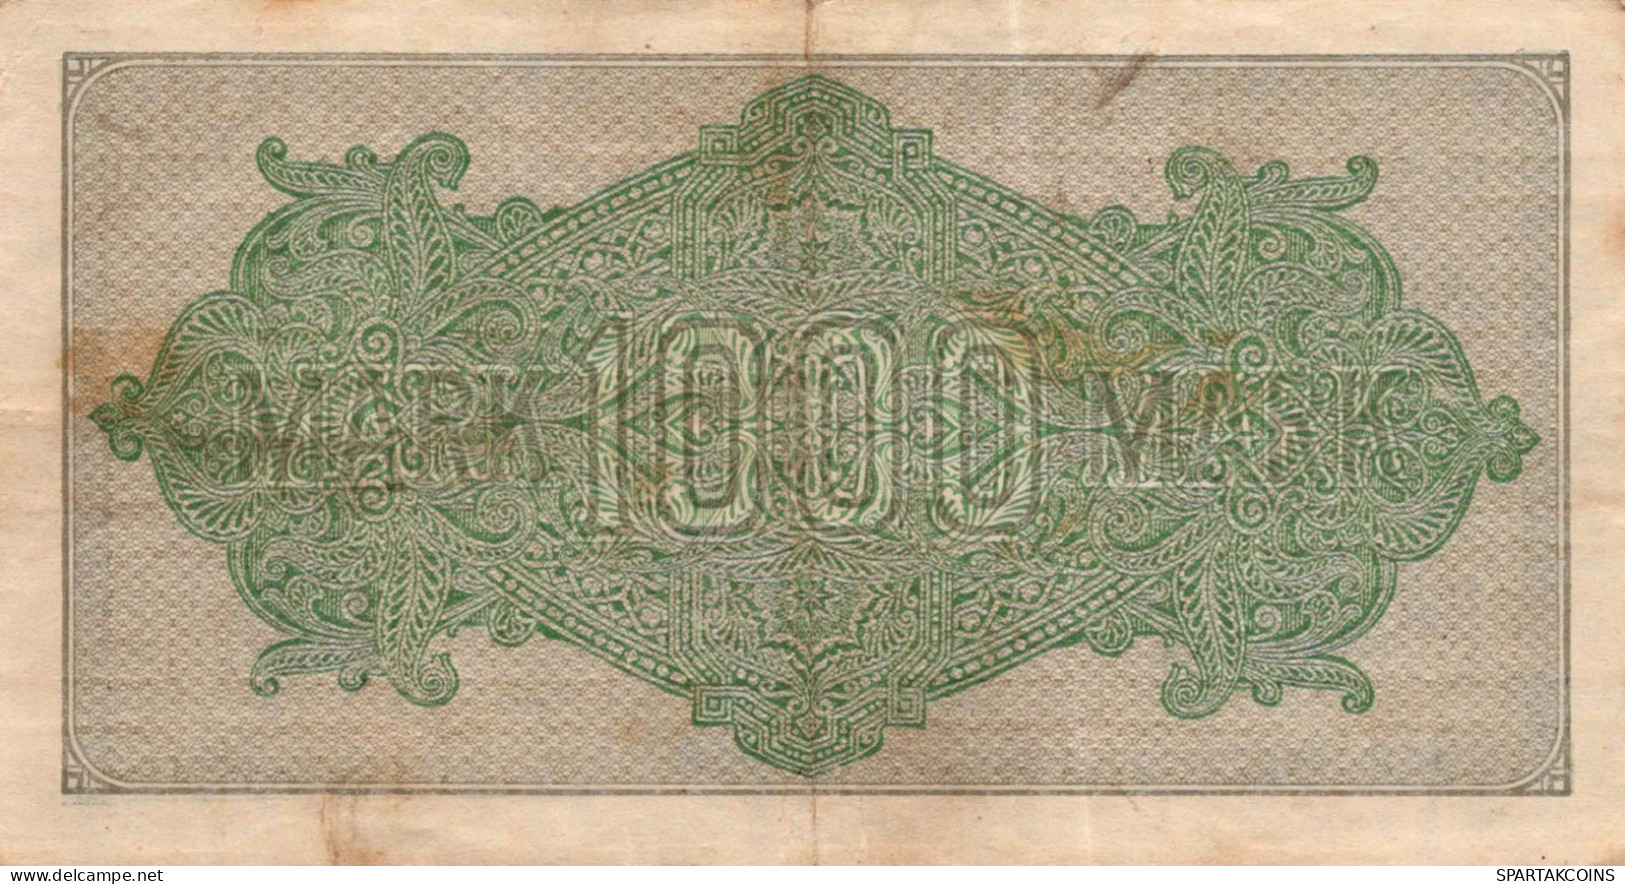 1000 MARK 1922 Stadt BERLIN DEUTSCHLAND Papiergeld Banknote #PL387 - [11] Local Banknote Issues